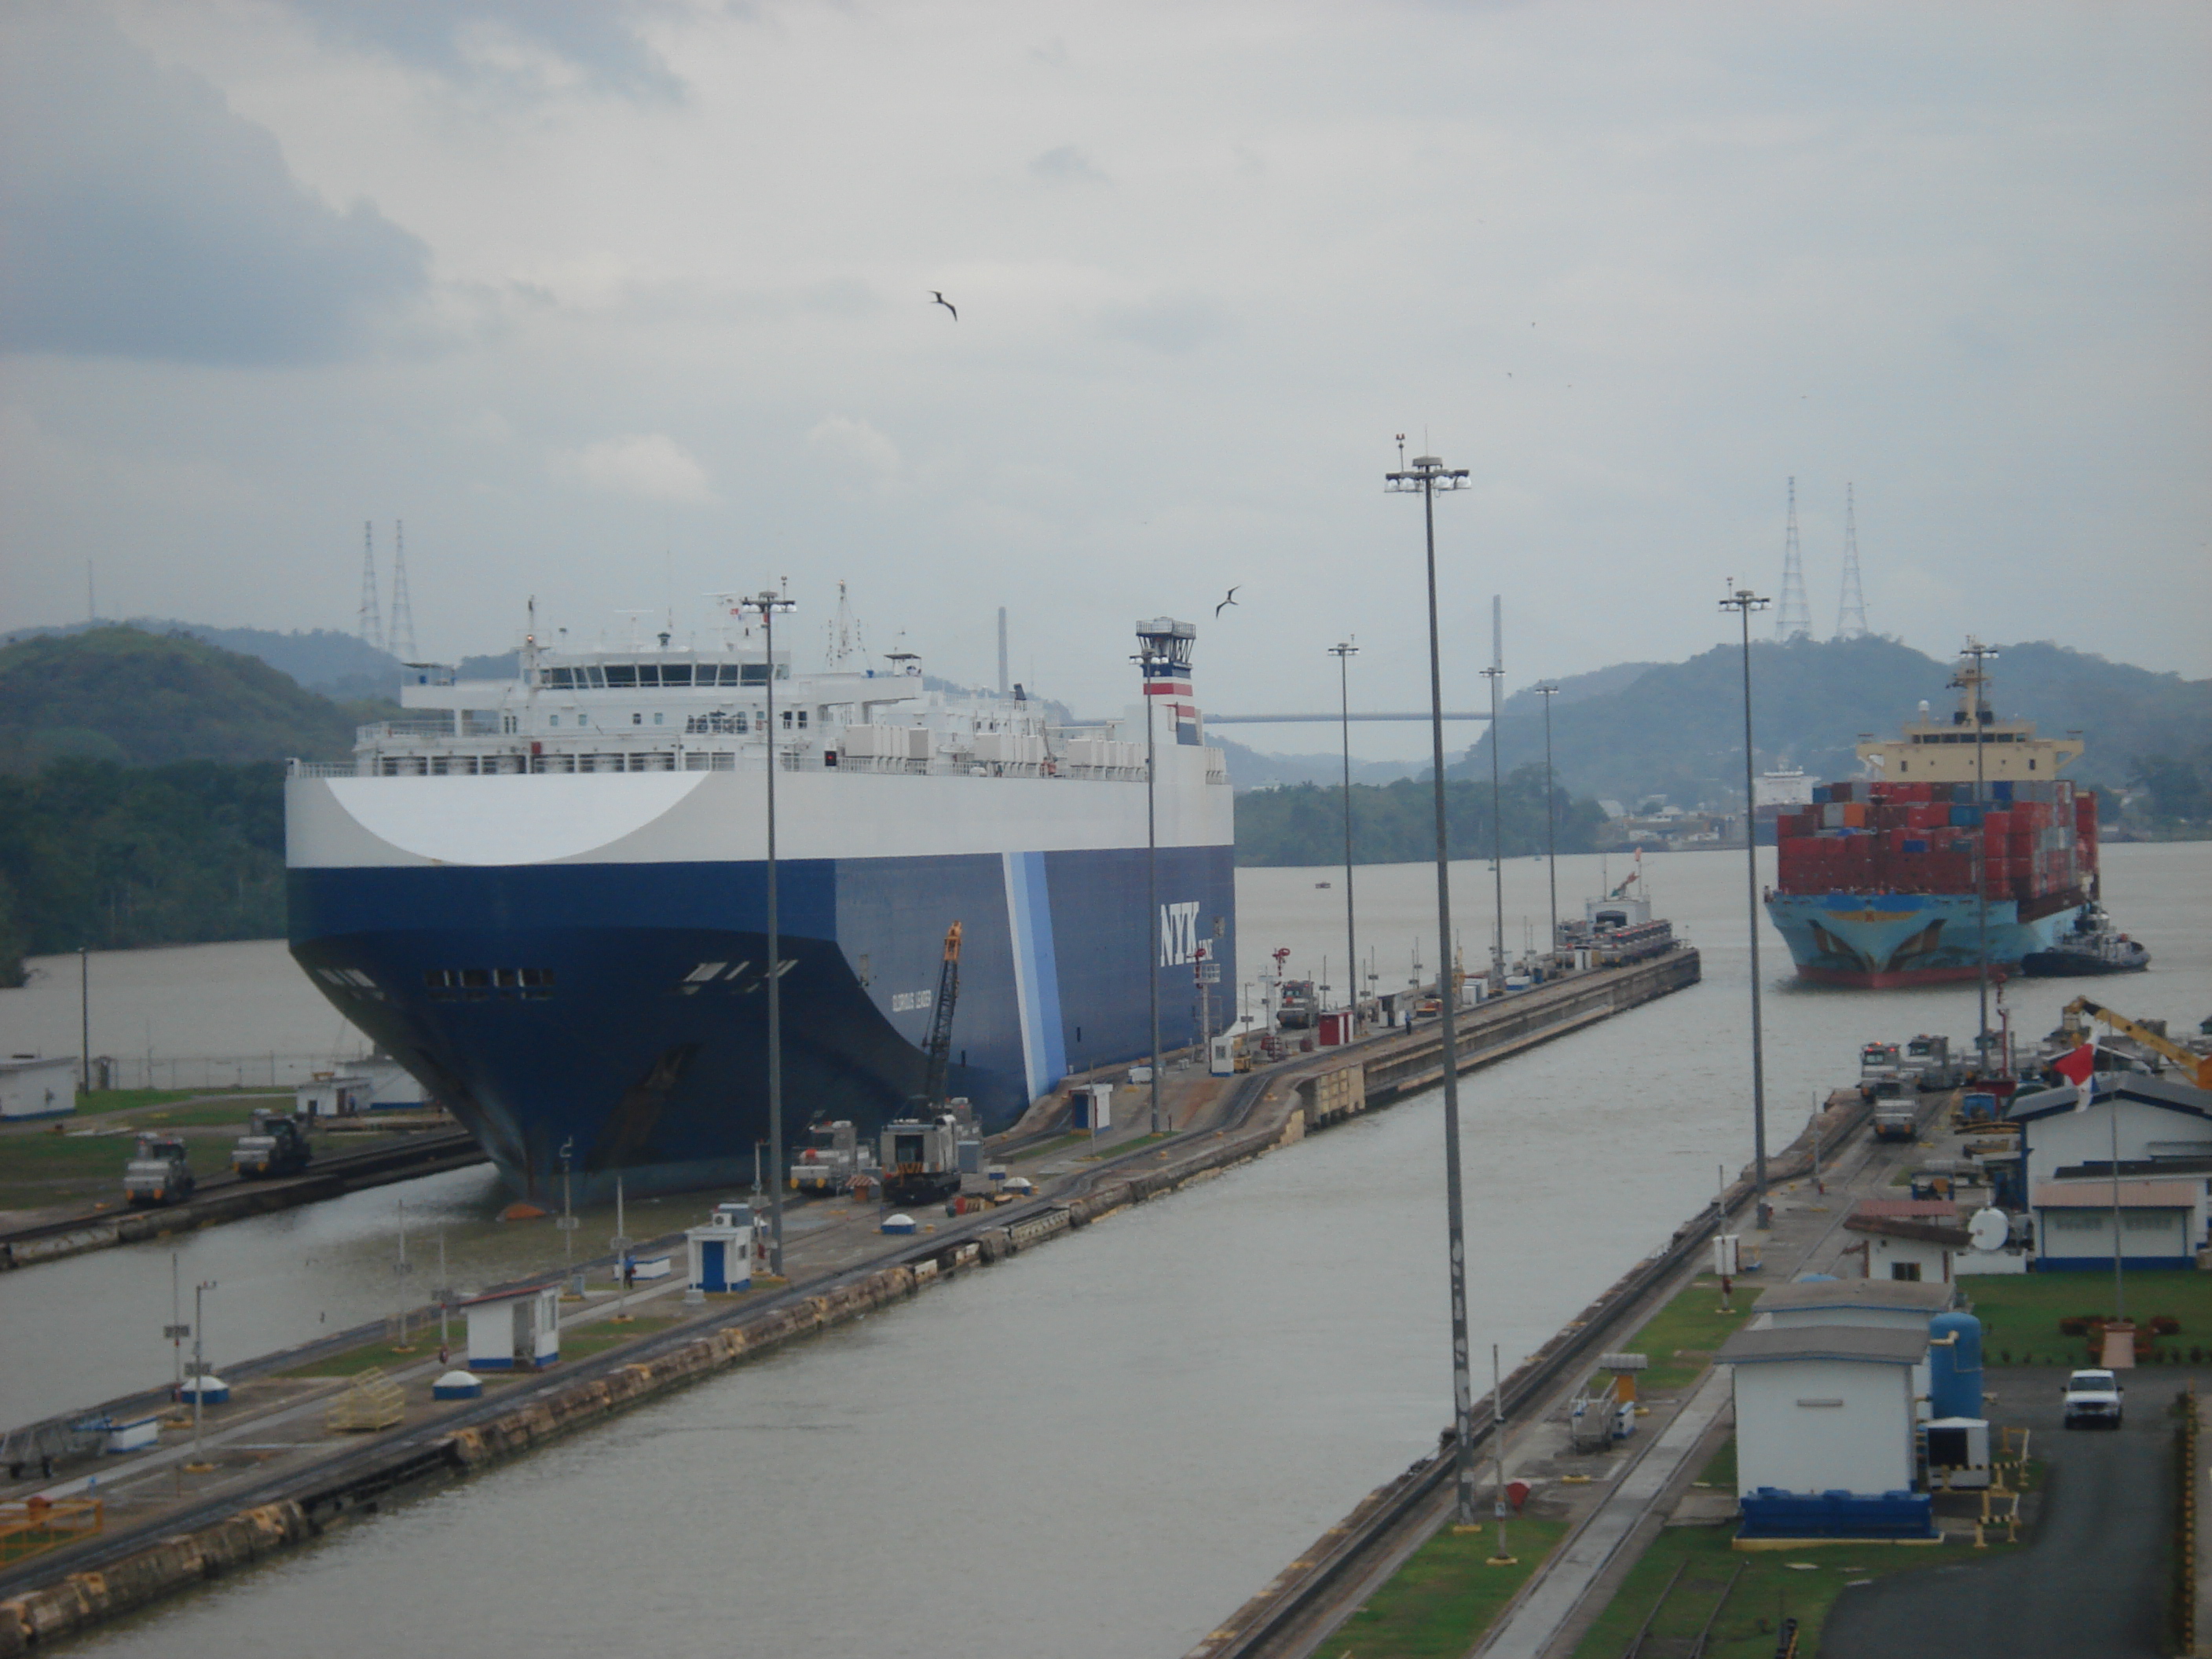 Canal de Panamá, foto por Enrique, Flickr, CC BY-NC-SA 2.0